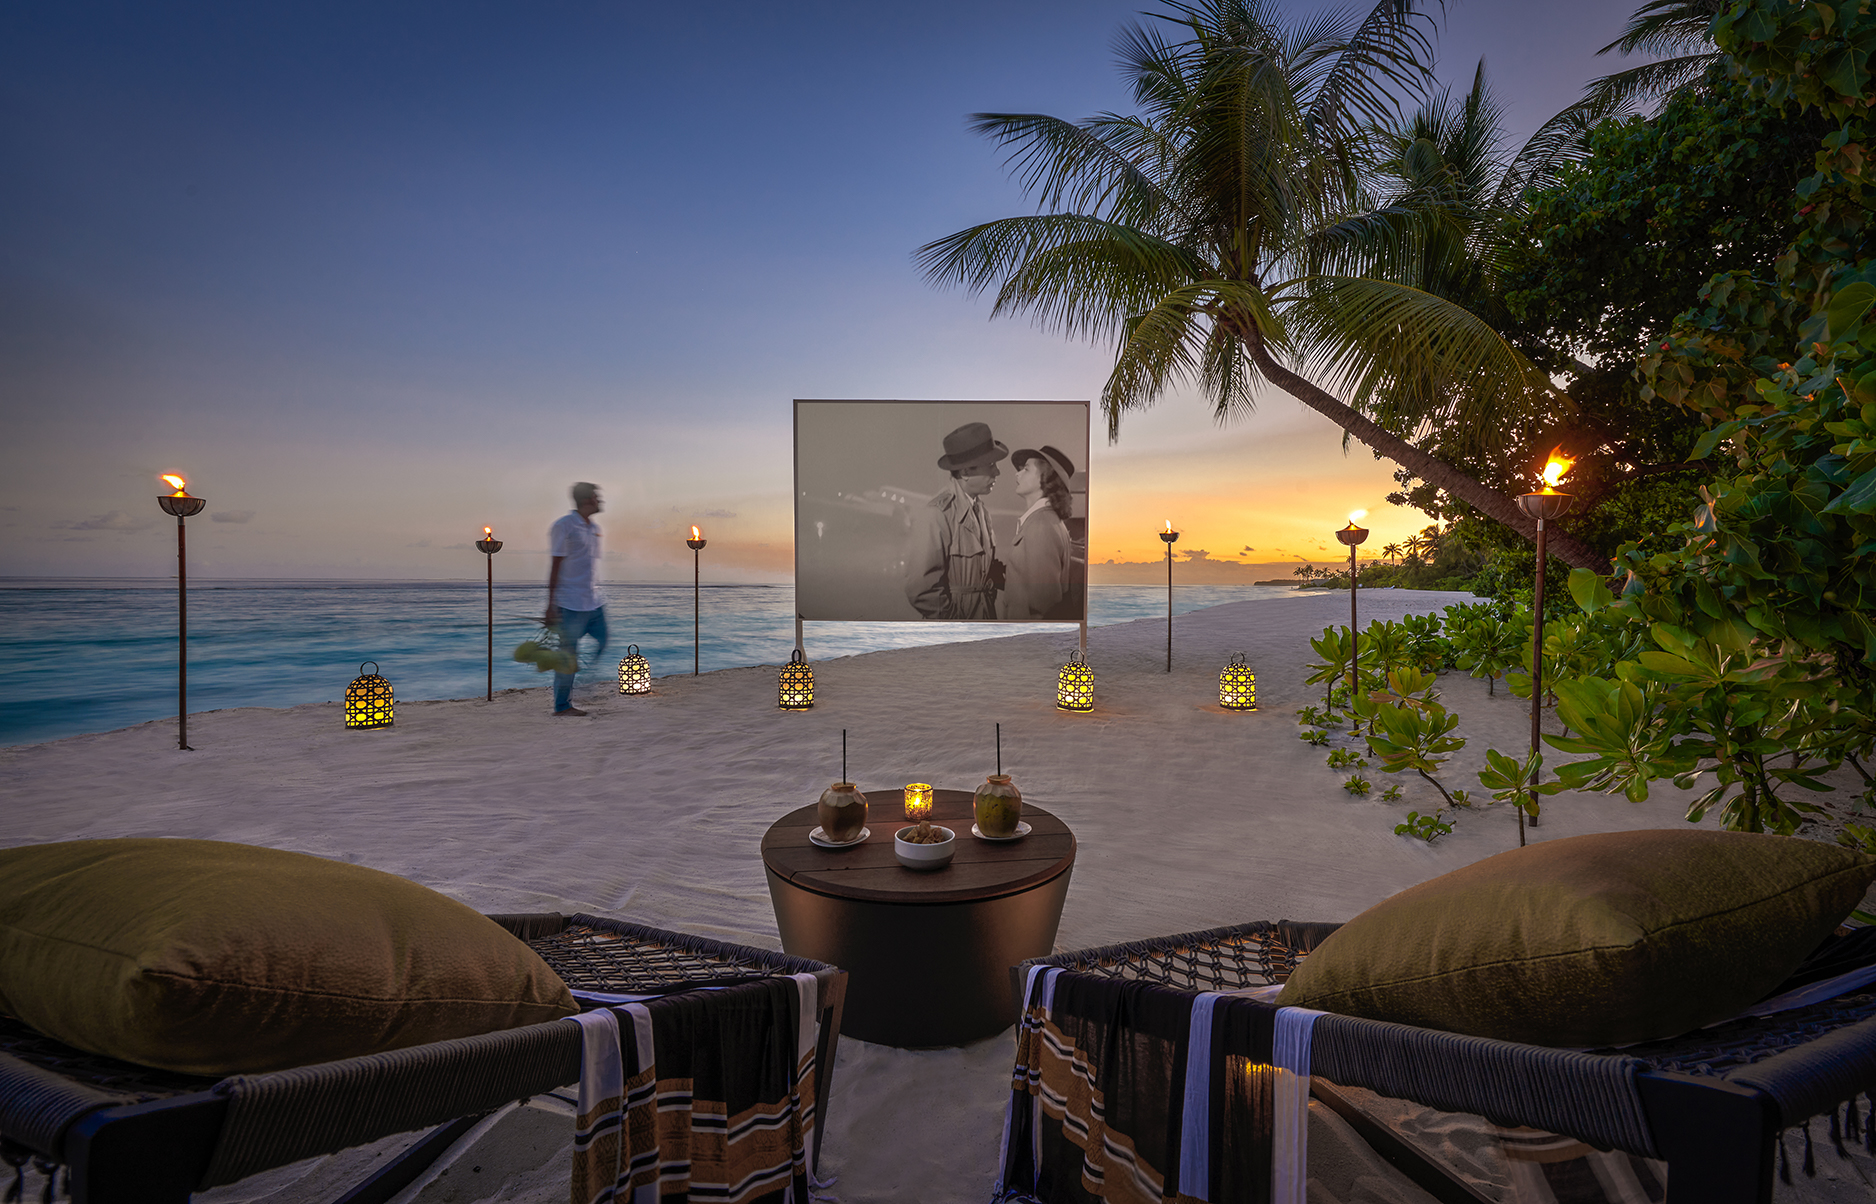 Пять причин провести отпуск в бутик-отеле Alila Kothaifaru Maldives. Выбор Вики Газинской (фото 13)